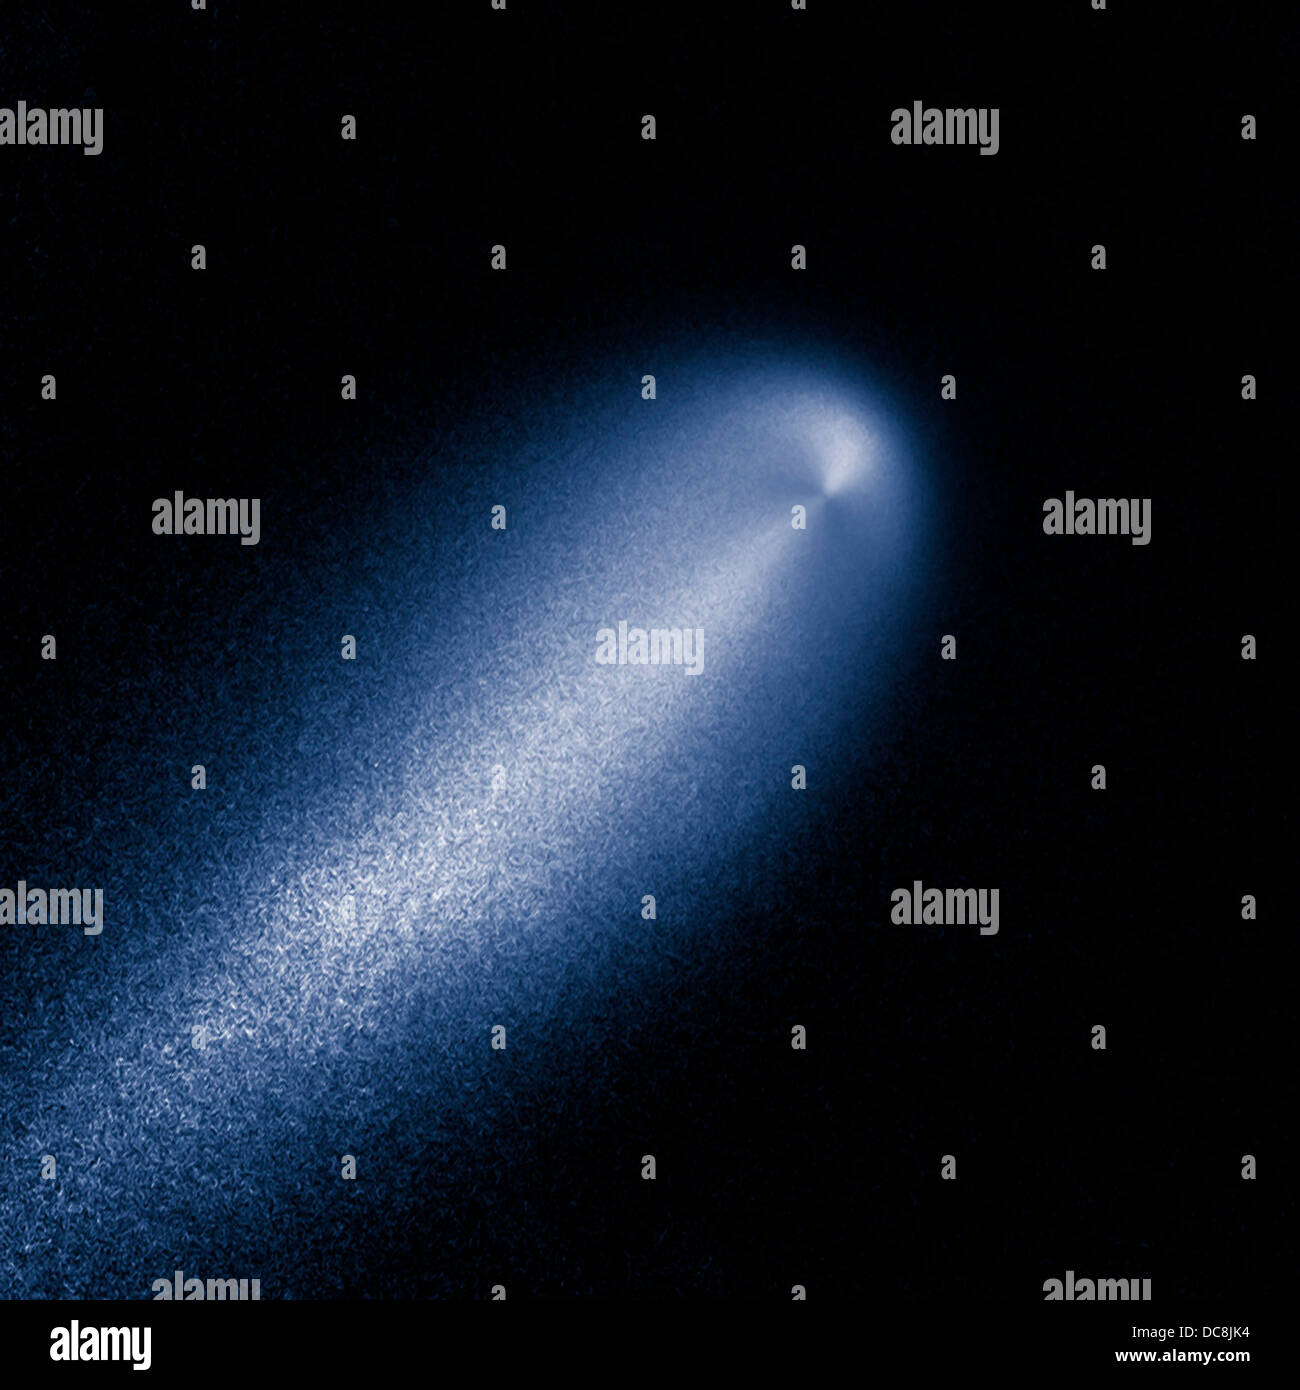 Diese Hubble Space Telescope der NASA Bild des Kometen C/2012 S1 bekannt als ISON am 10. April 2013 fotografiert als der Komet etwas näher als Jupiters Orbit in einer Entfernung von 386 Millionen Meilen von der Sonne war. Der Komet ist einer der hellsten jemals entdeckt entspricht derjenigen der Vollmond. Stockfoto